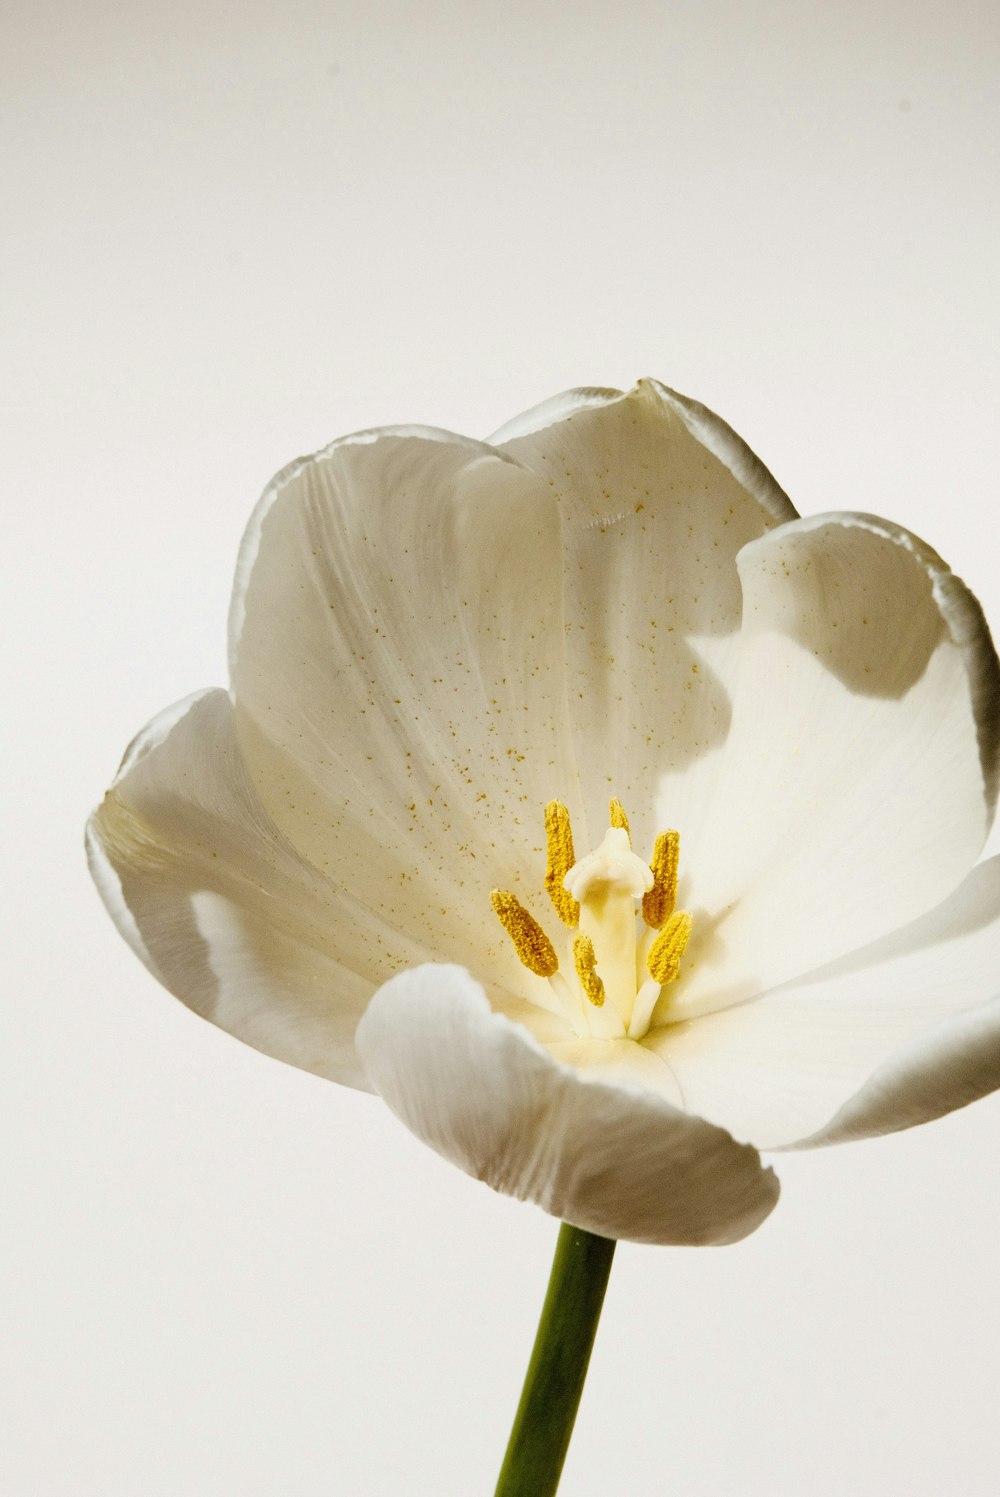 flor branca e amarela na fotografia de perto